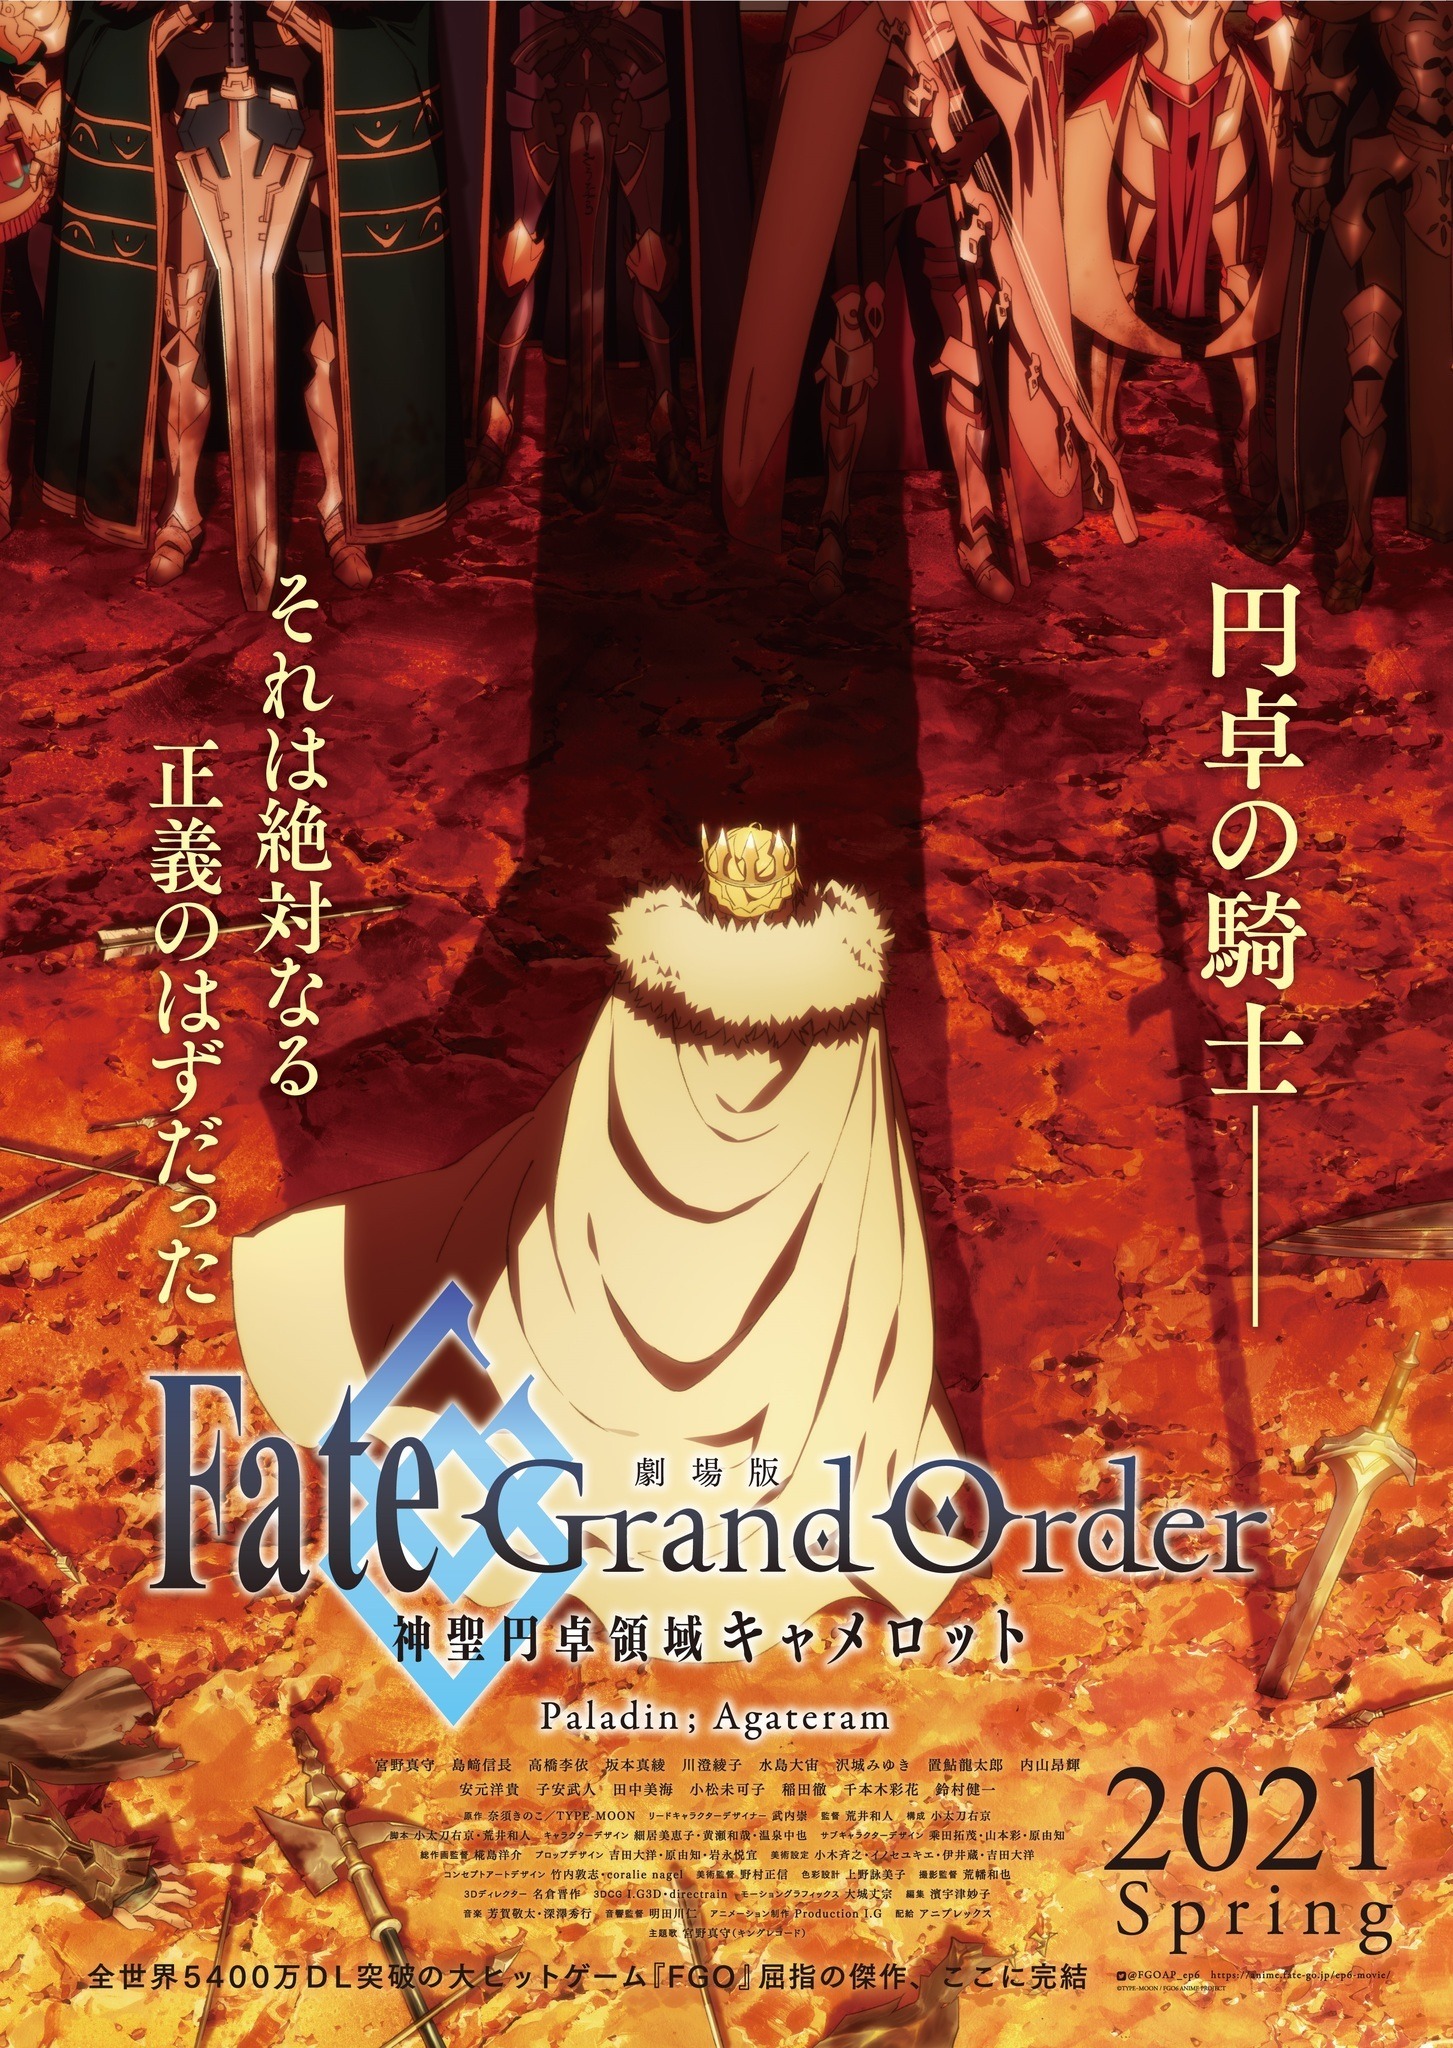 劇場版 Fate/Grand Order」後編、2021年春に公開決定 獅子王の背中描い